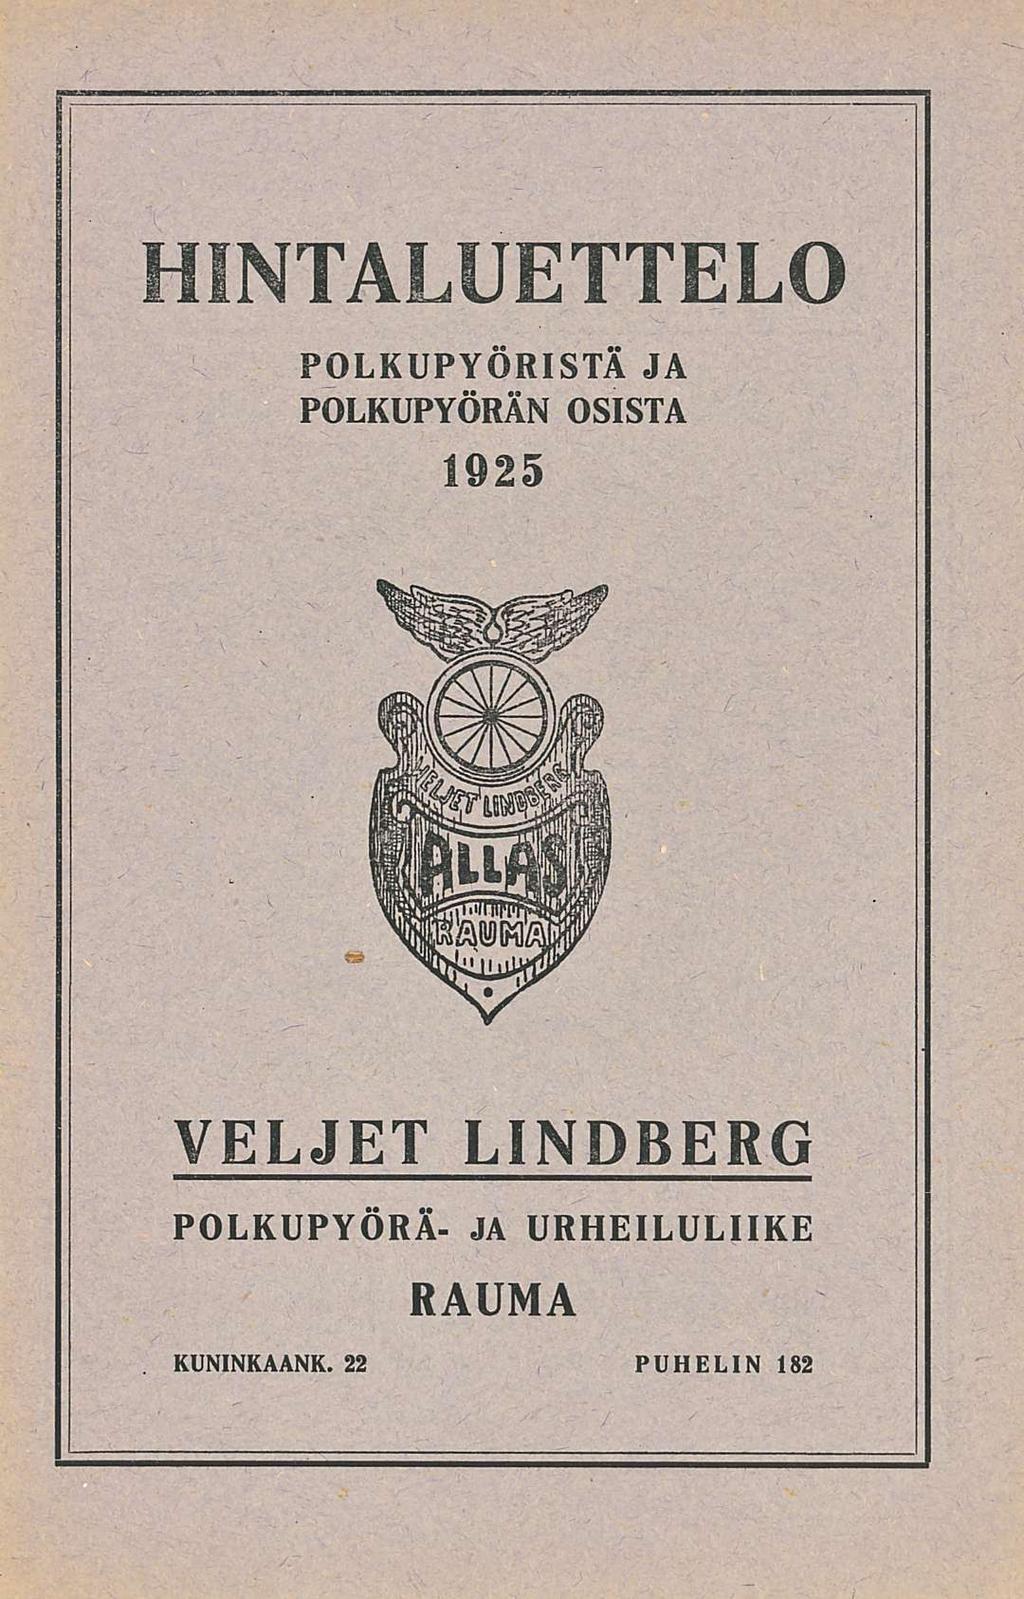 HINTALUETTELO POLKUPYÖRISTÄ JA POLKUPYÖRÄN OSISTA 1925 VELJET